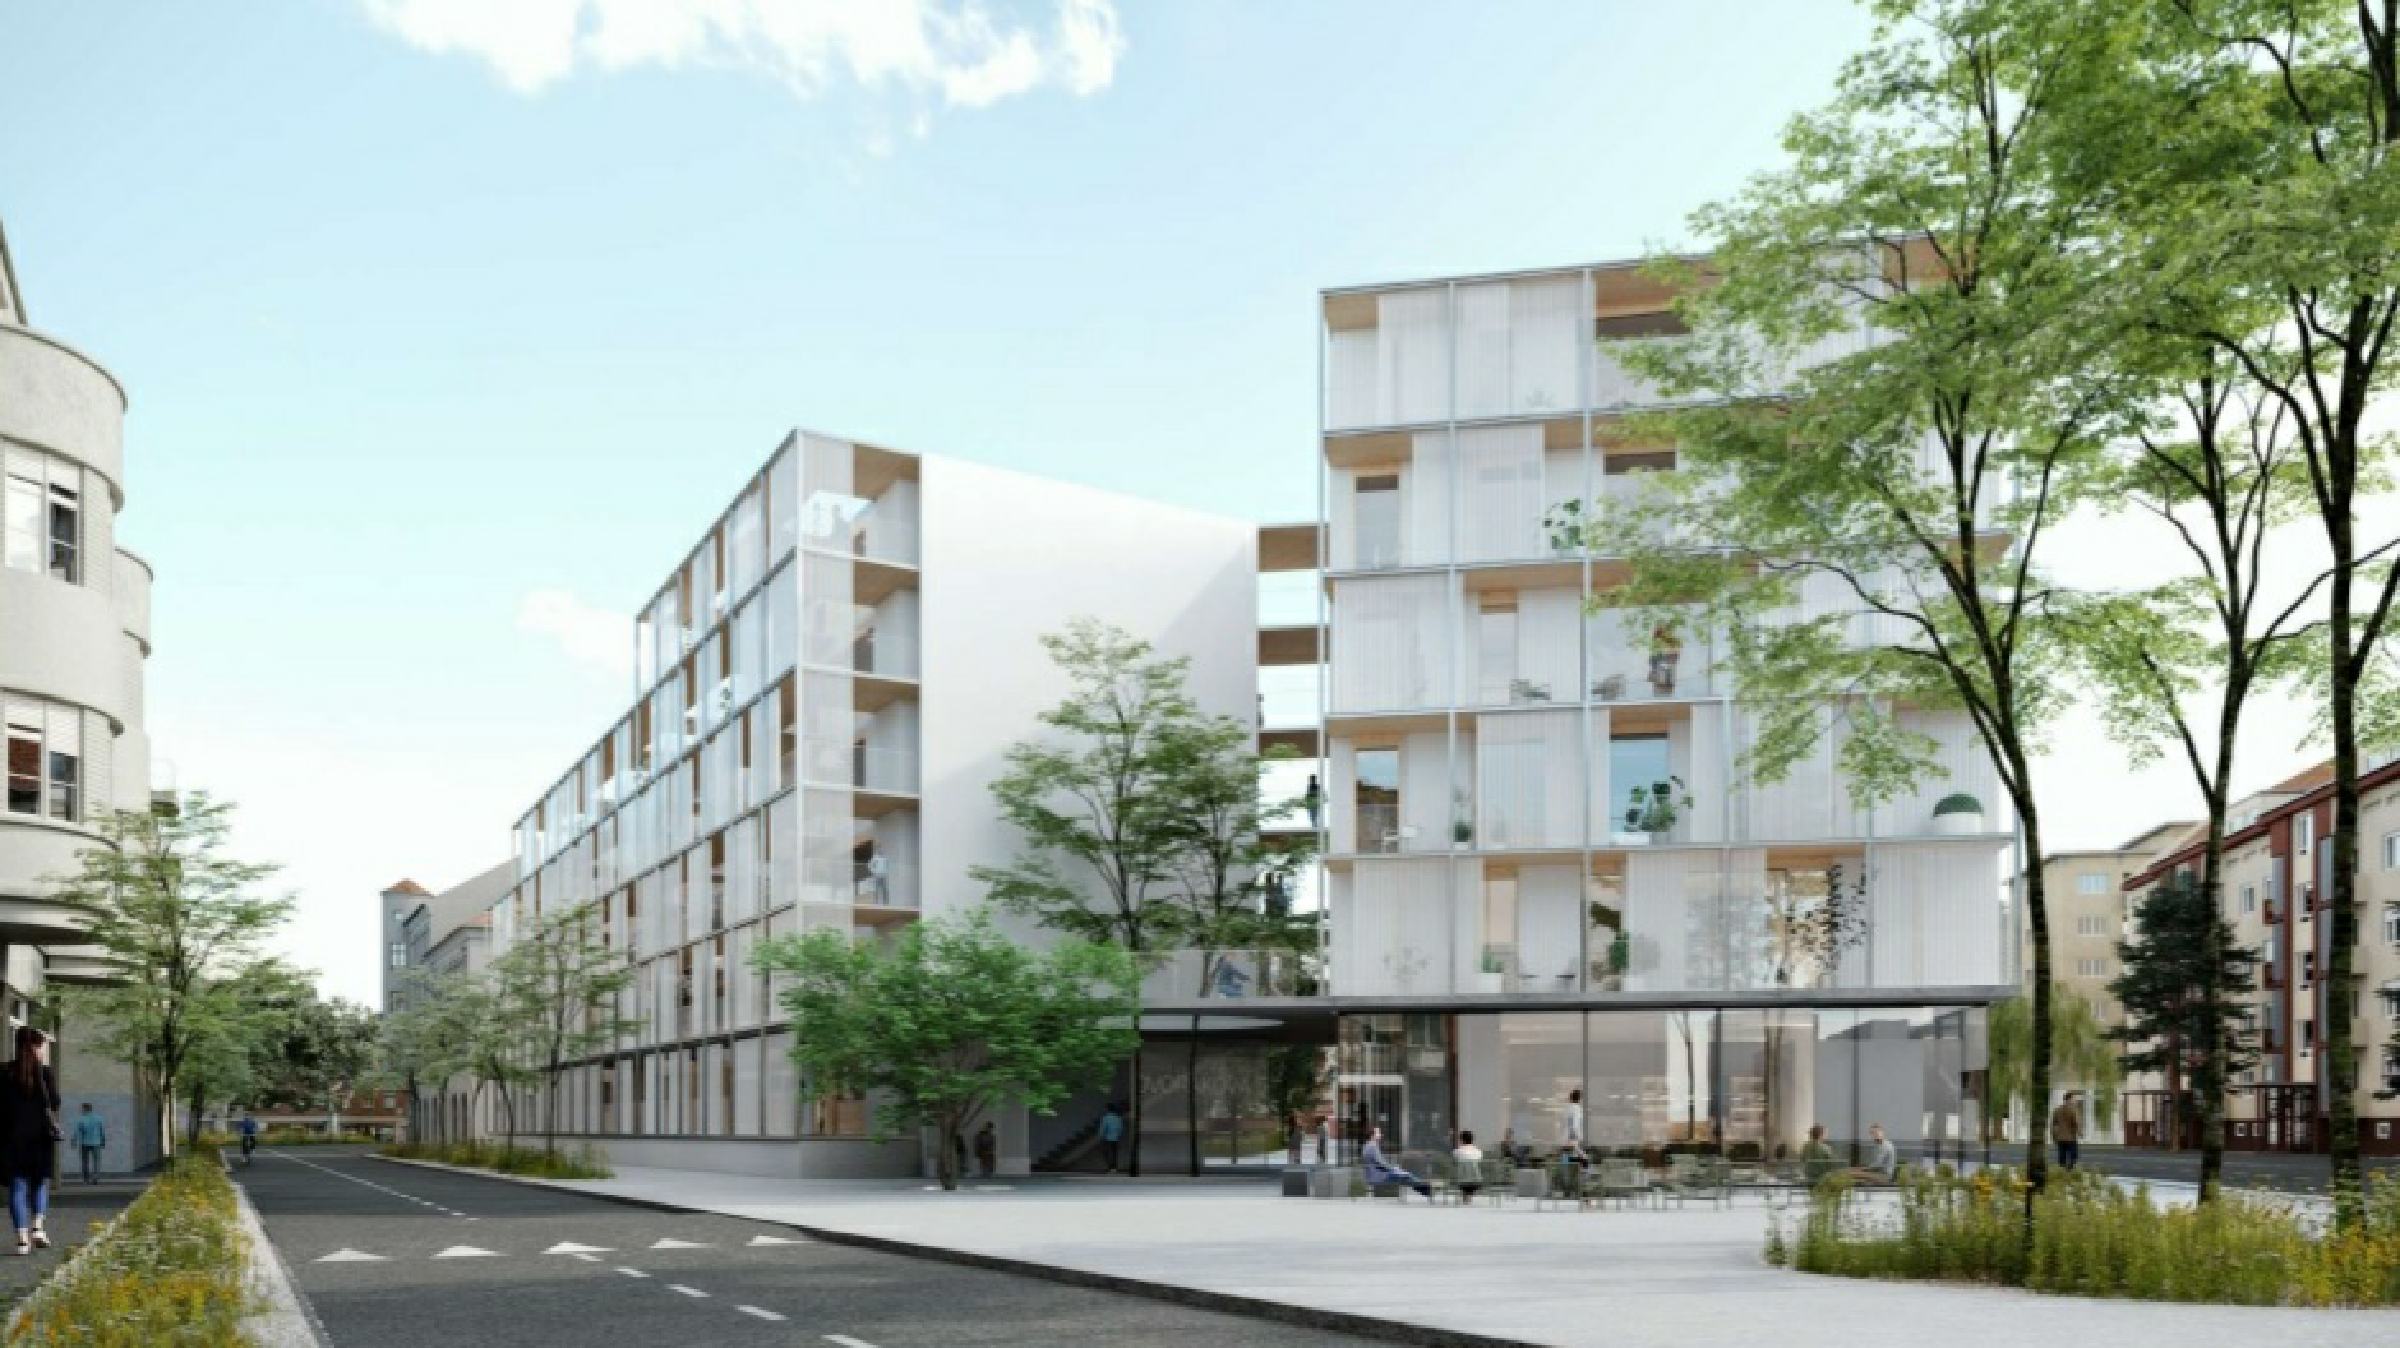 DNEVNA: Okoliške stanovalce razburjajo načrti za objekt JMSS na Dvořakovi ulici